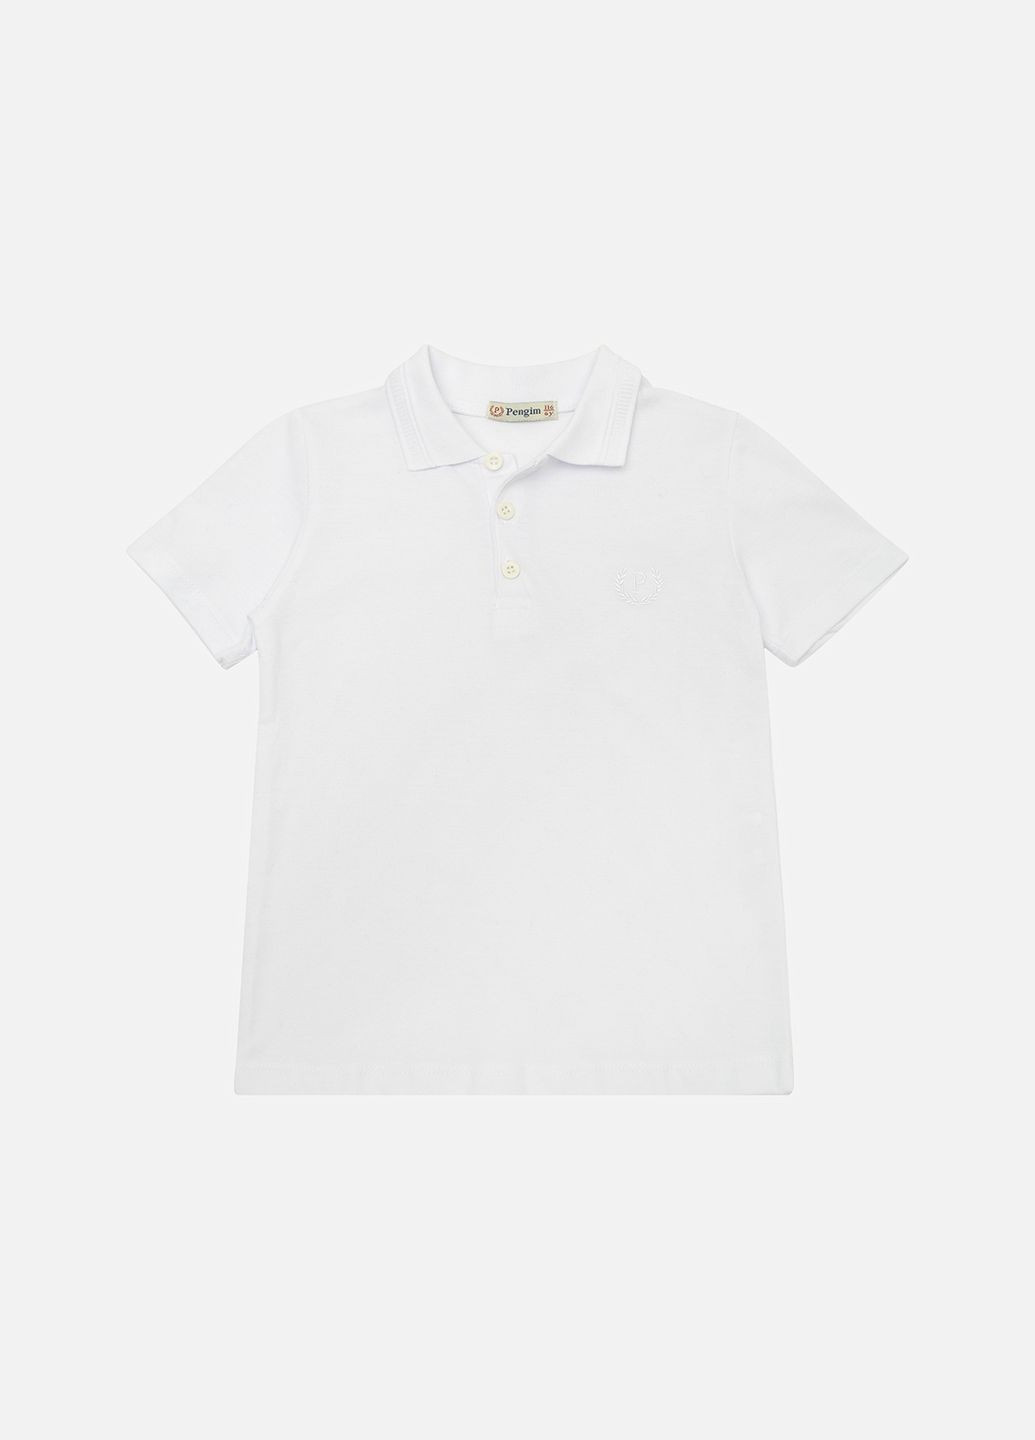 Белая детская футболка-футболка поло для мальчика цвет белый цб-00222247 для мальчика Pengim